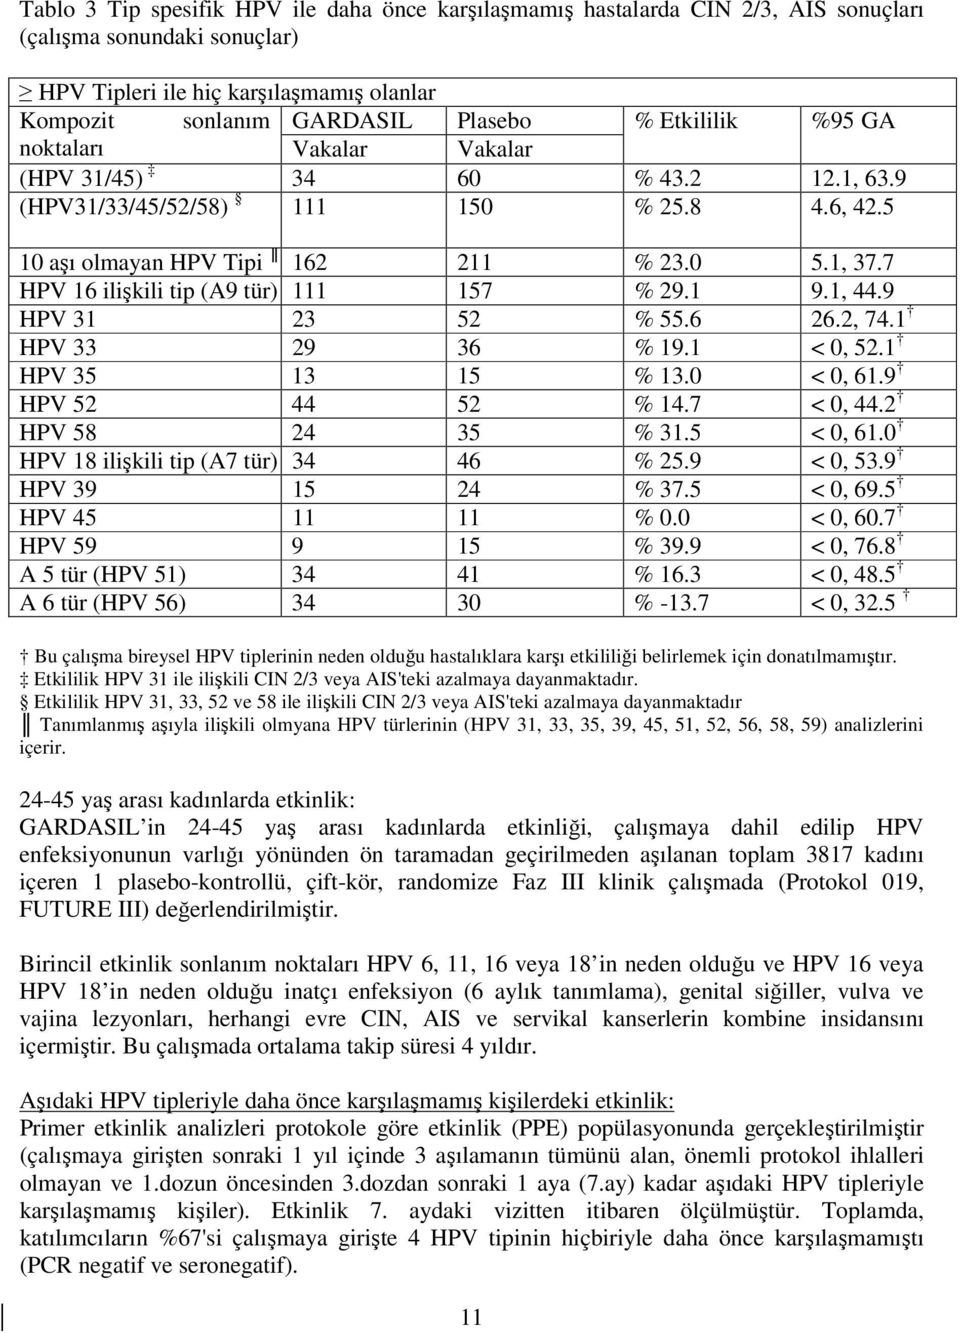 7 HPV 16 ilişkili tip (A9 tür) 111 157 % 29.1 9.1, 44.9 HPV 31 23 52 % 55.6 26.2, 74.1 HPV 33 29 36 % 19.1 < 0, 52.1 HPV 35 13 15 % 13.0 < 0, 61.9 HPV 52 44 52 % 14.7 < 0, 44.2 HPV 58 24 35 % 31.